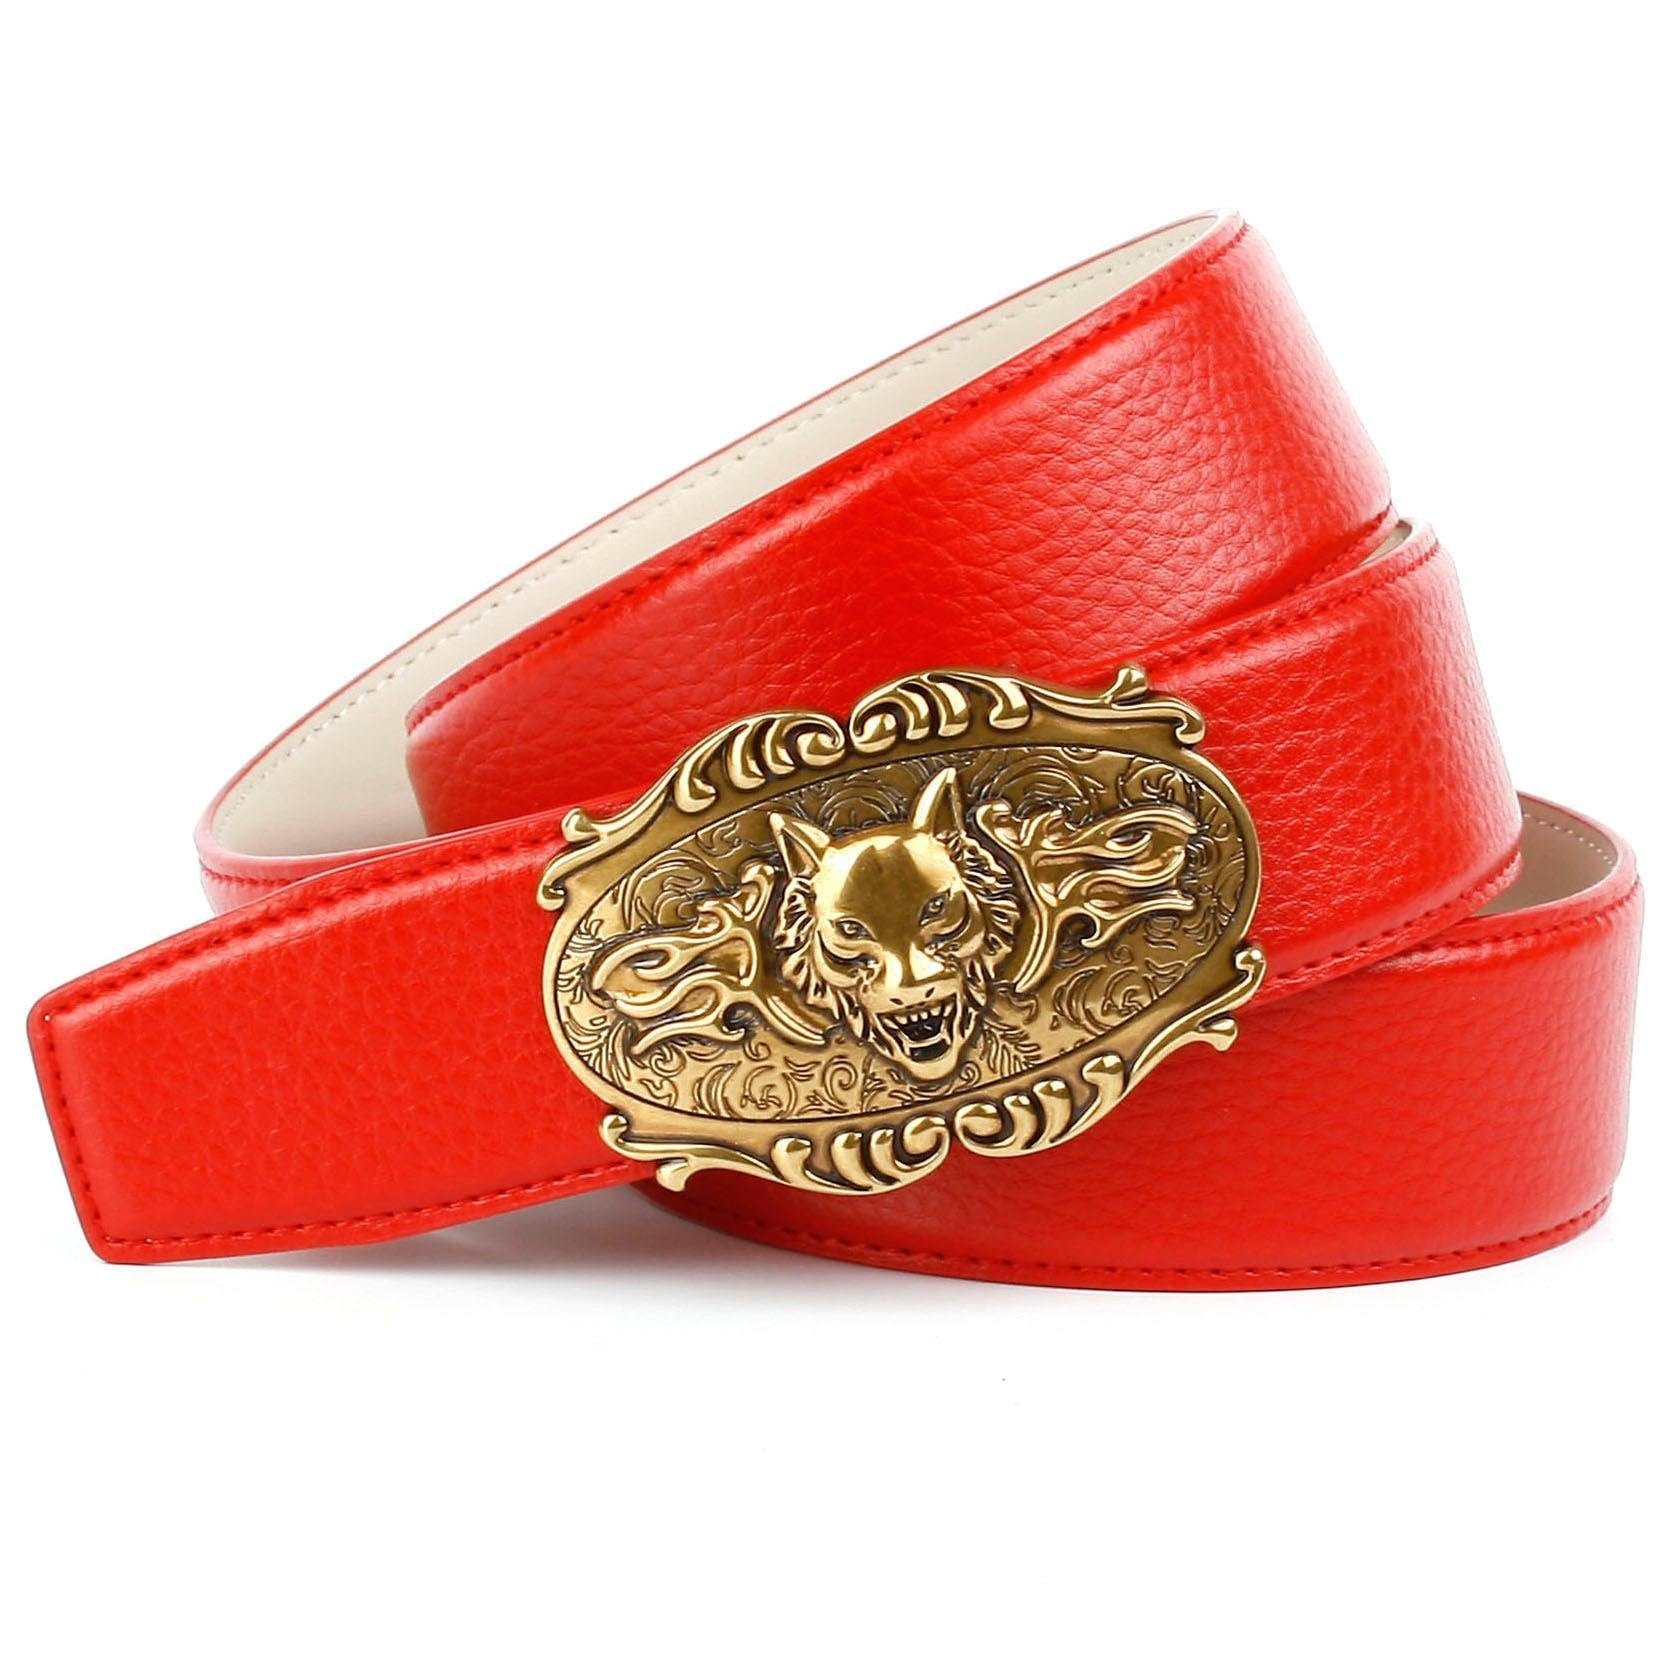 Anthoni Crown Ledergürtel, in kaufen rot mit Wolfkopf-Schnalle bequem